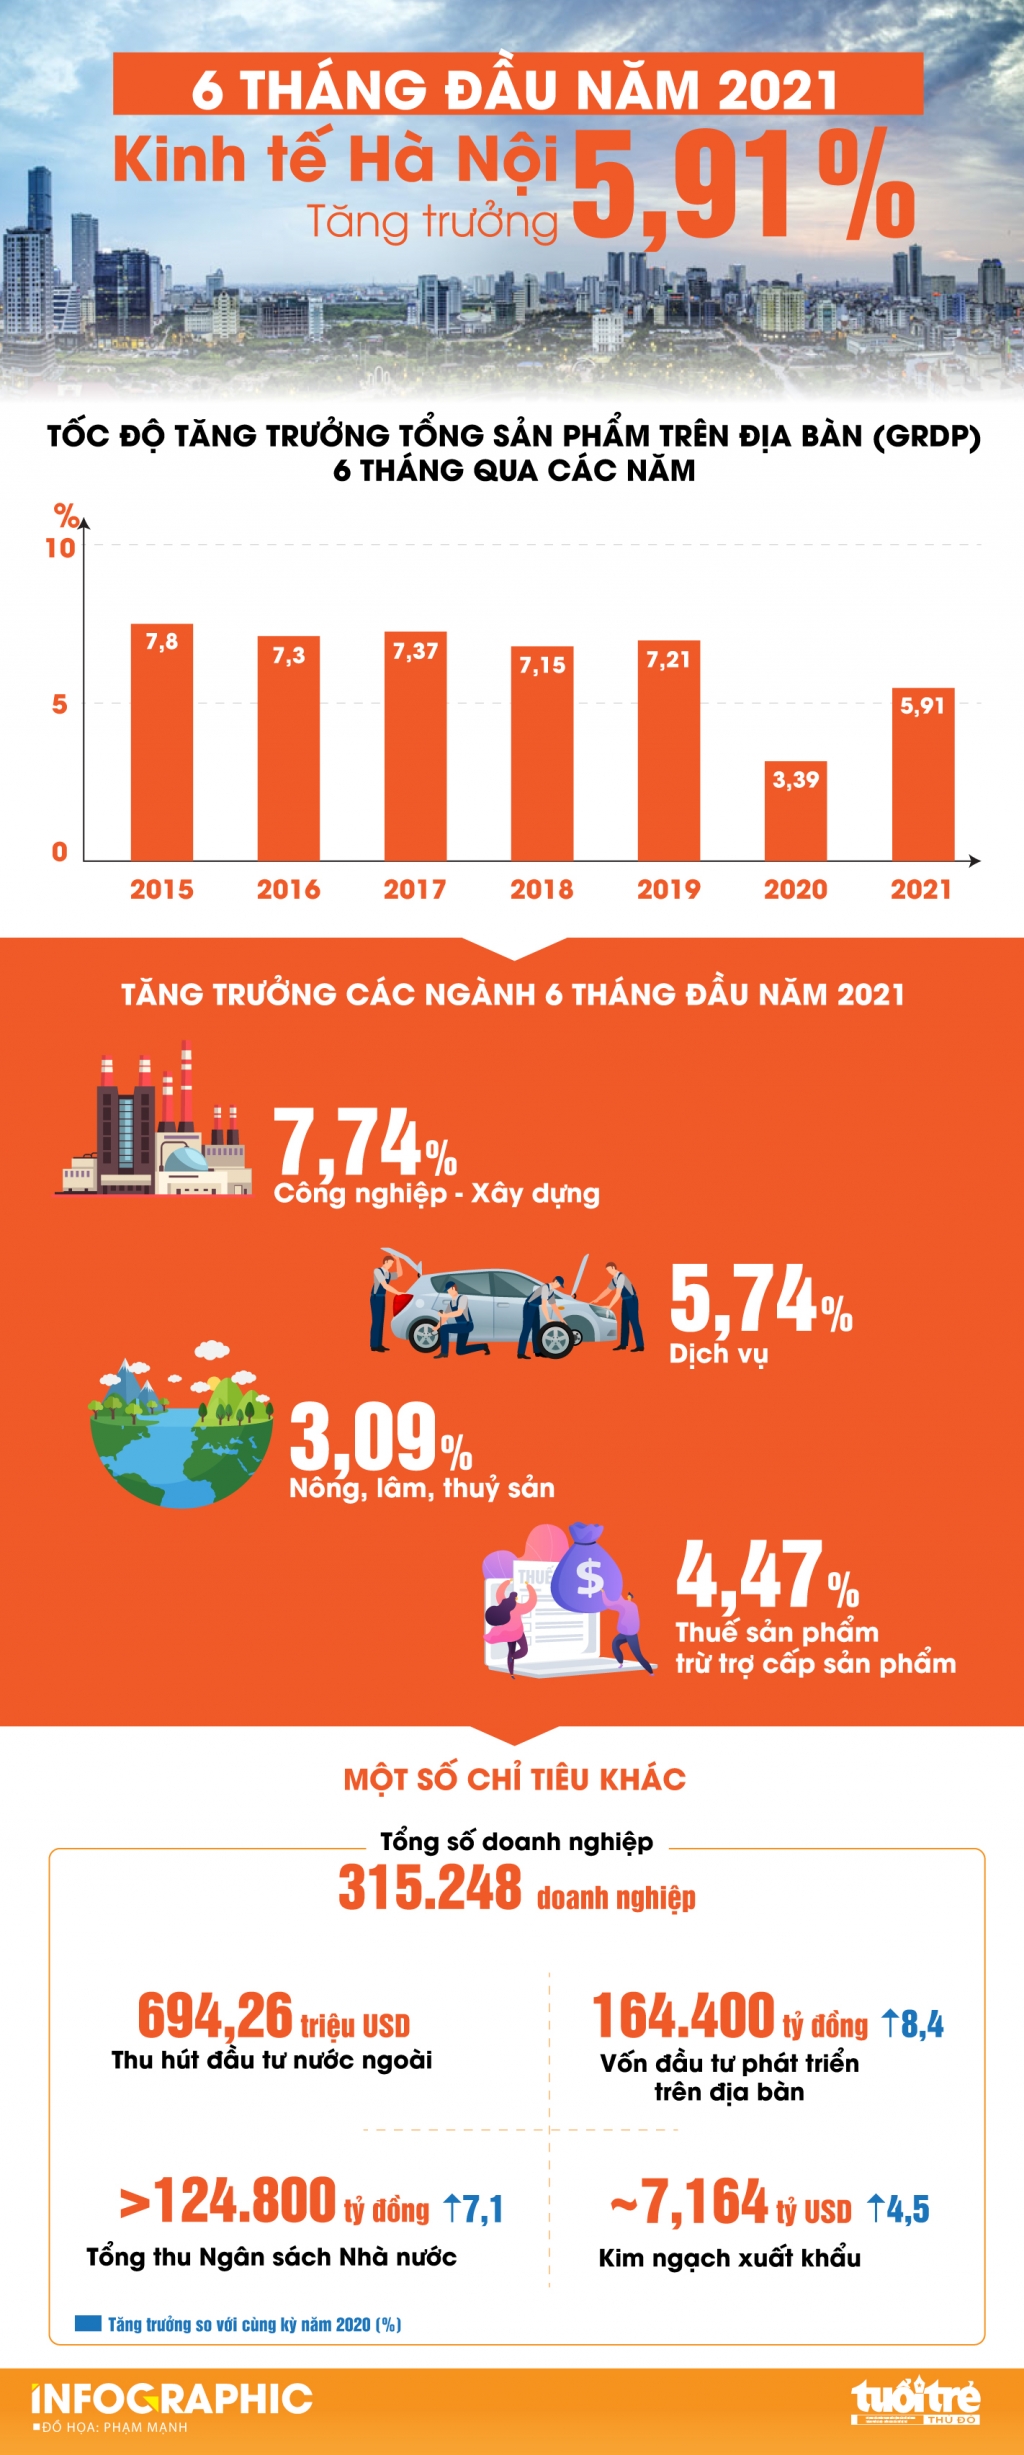 Kinh tế Hà Nội tăng trưởng 5,91% trong 6 tháng đầu năm 2021